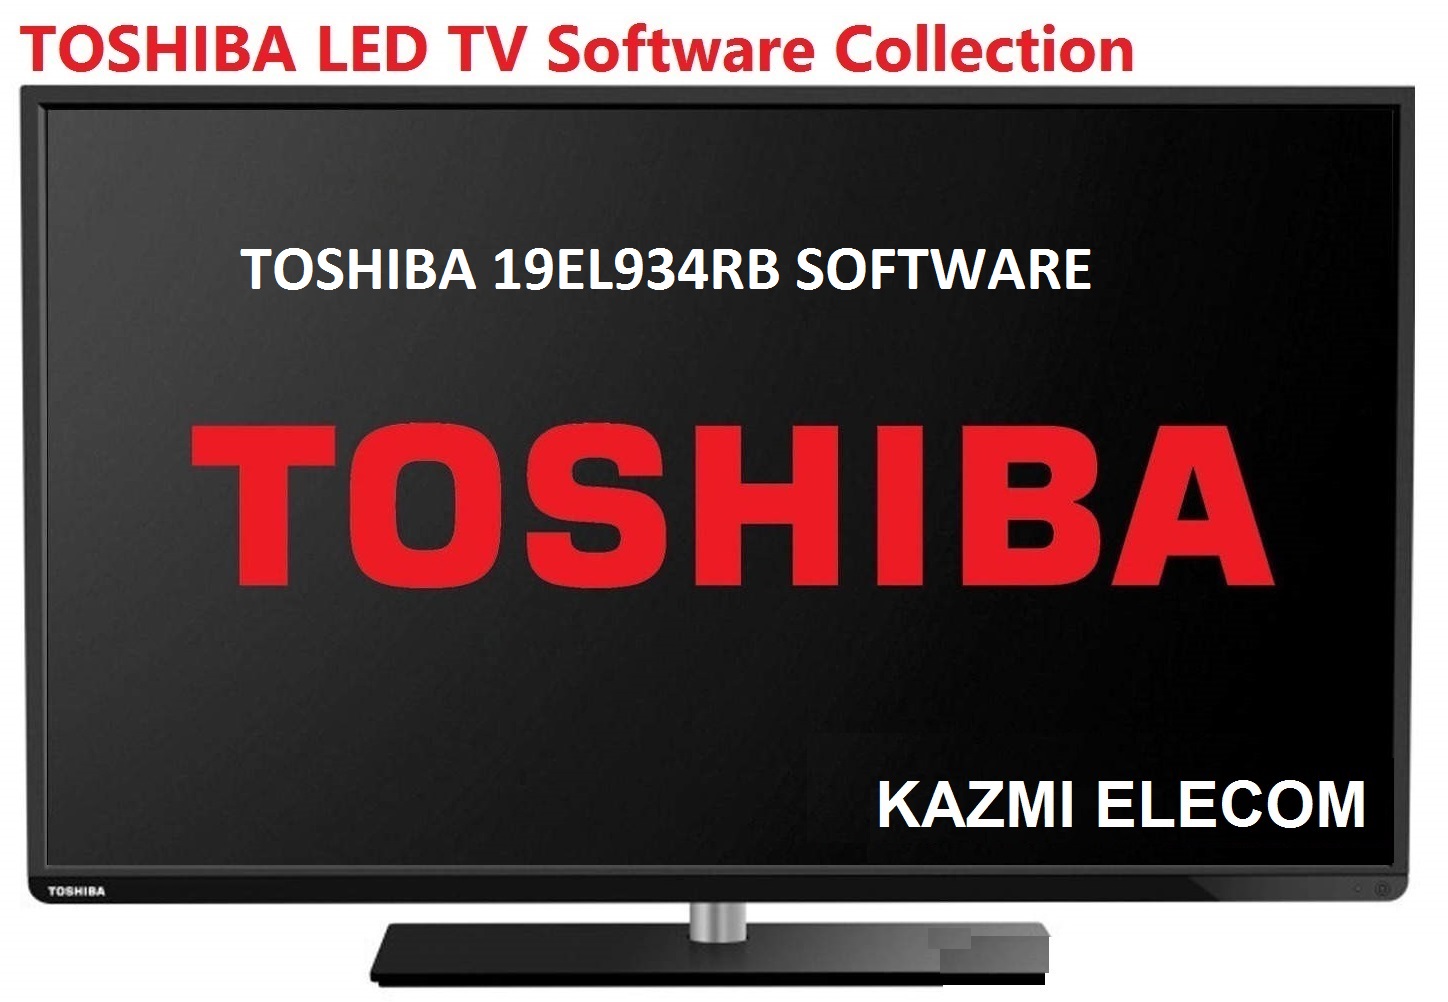 Toshiba 19El934Rb